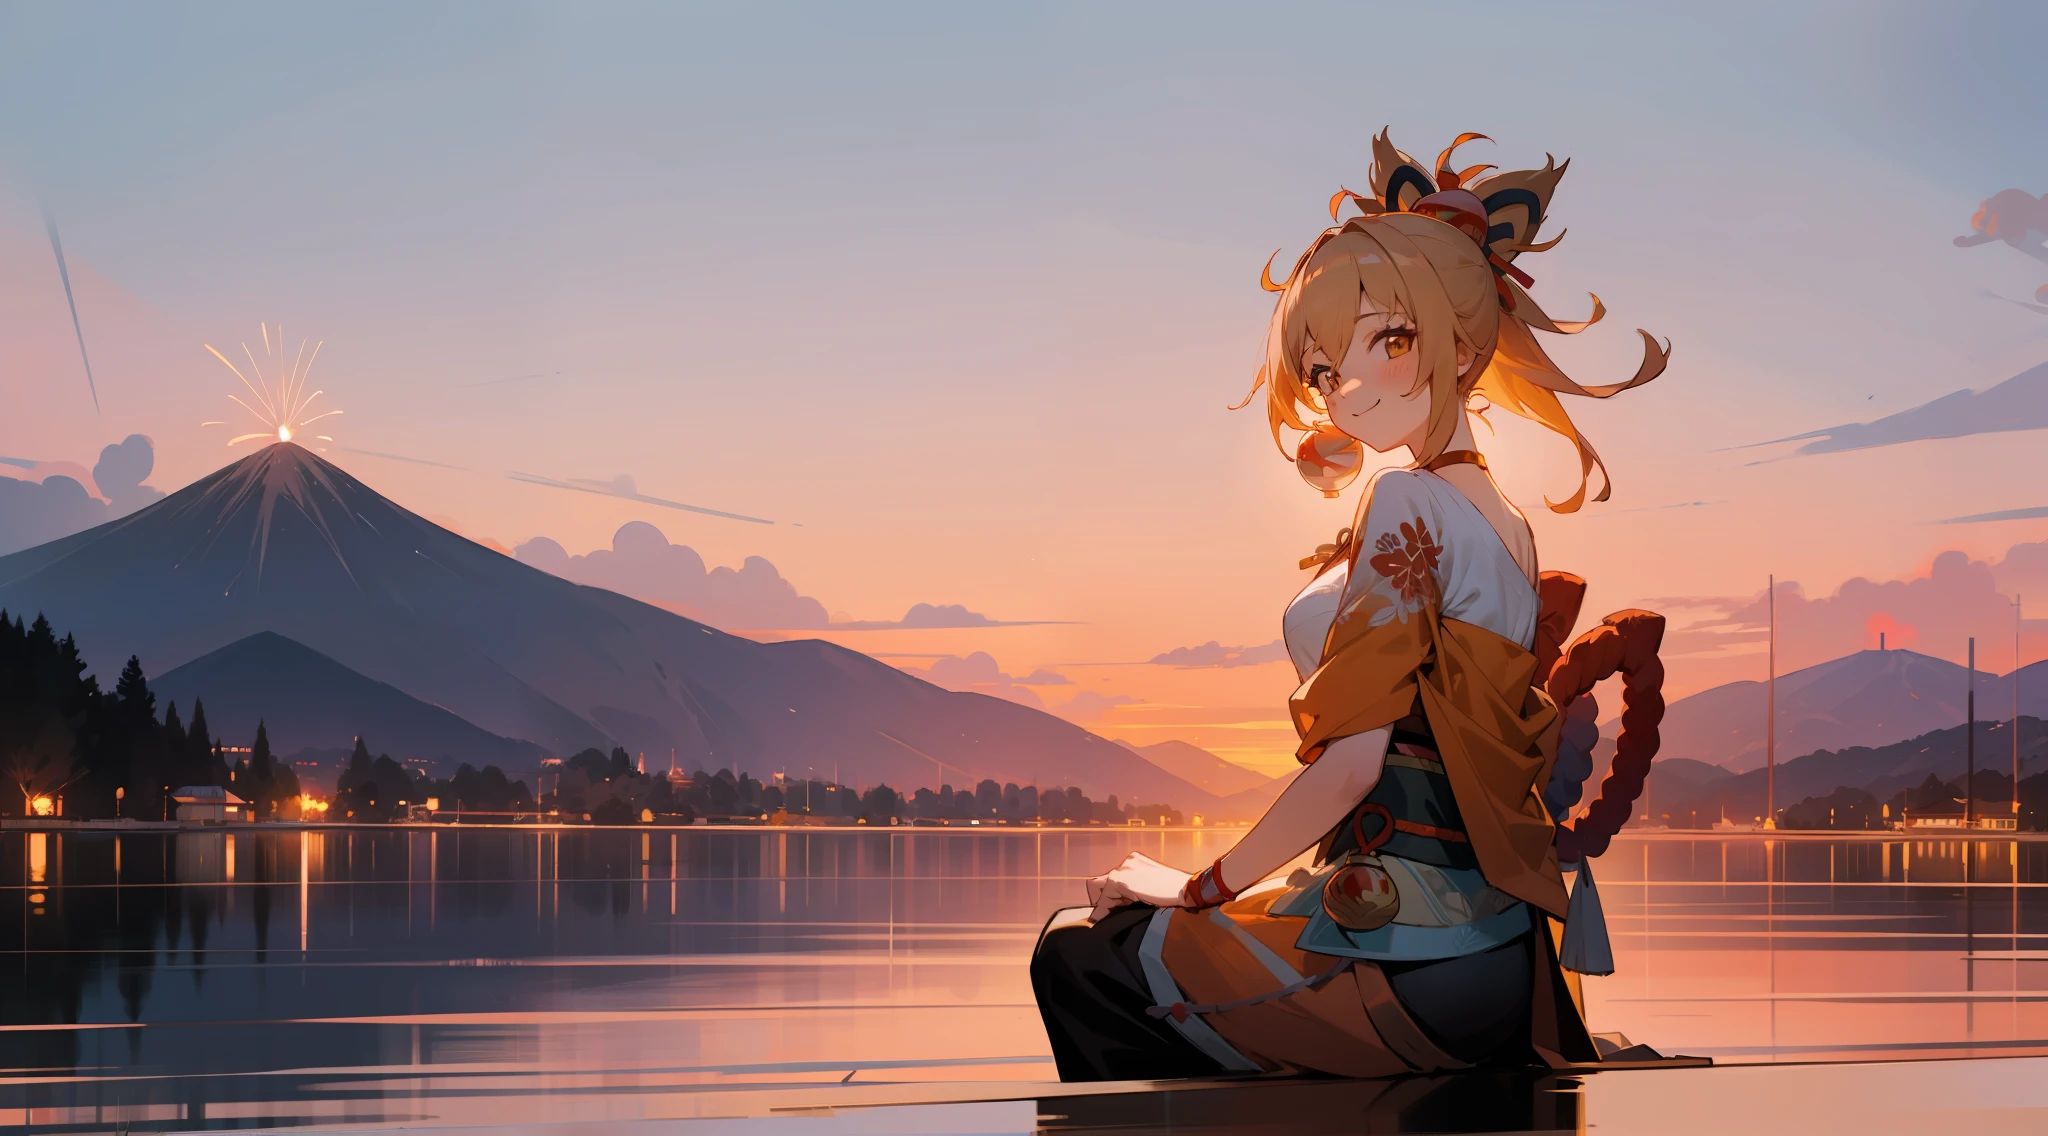 Yoimiya, sorridente, adulto, amadureceu, ilustração, 1 garota, fogos de artifício, montanha, cenário, pôr do sol, crepúsculo, lindo, Céu dourado, sentado em uma enseada, acenando, arvore Sakura, a view of a japanese town at pôr do sol